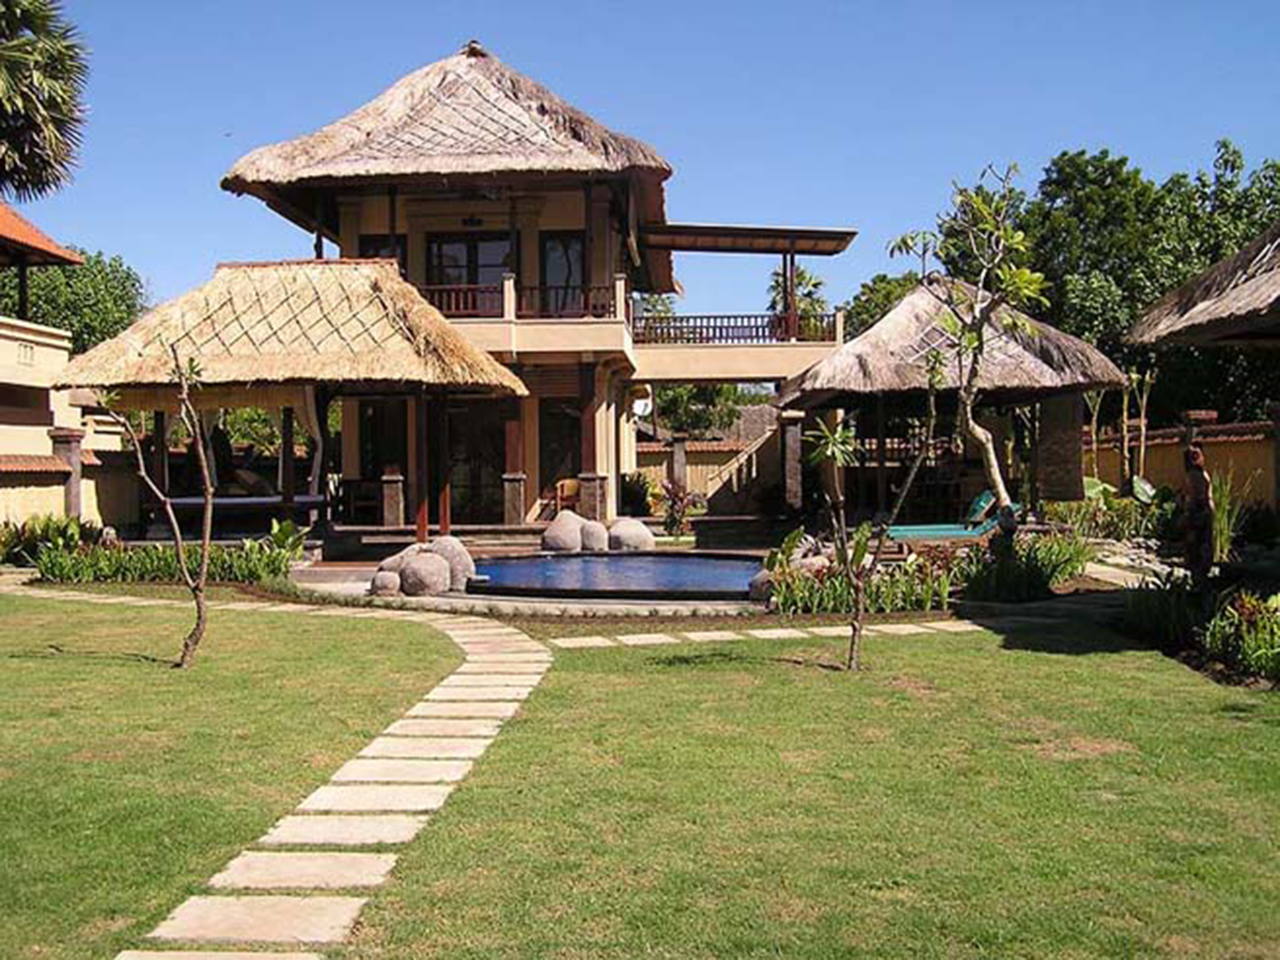 
Amertha Bali Villas